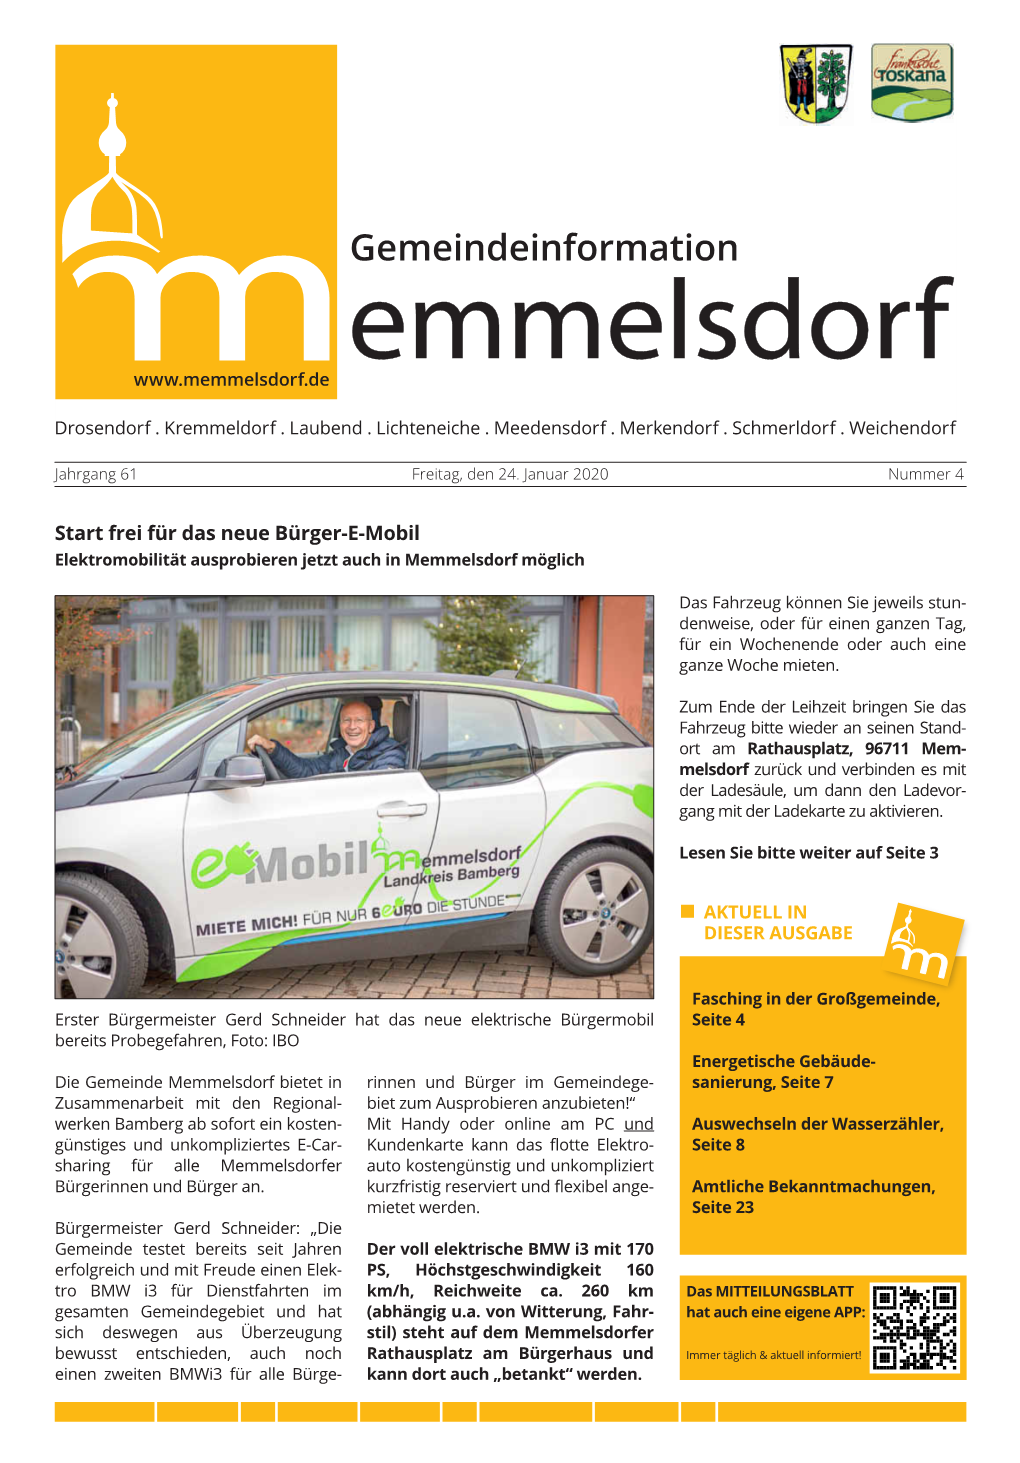 Start Frei Für Das Neue Bürger-E-Mobil Elektromobilität Ausprobieren Jetzt Auch in Memmelsdorf Möglich